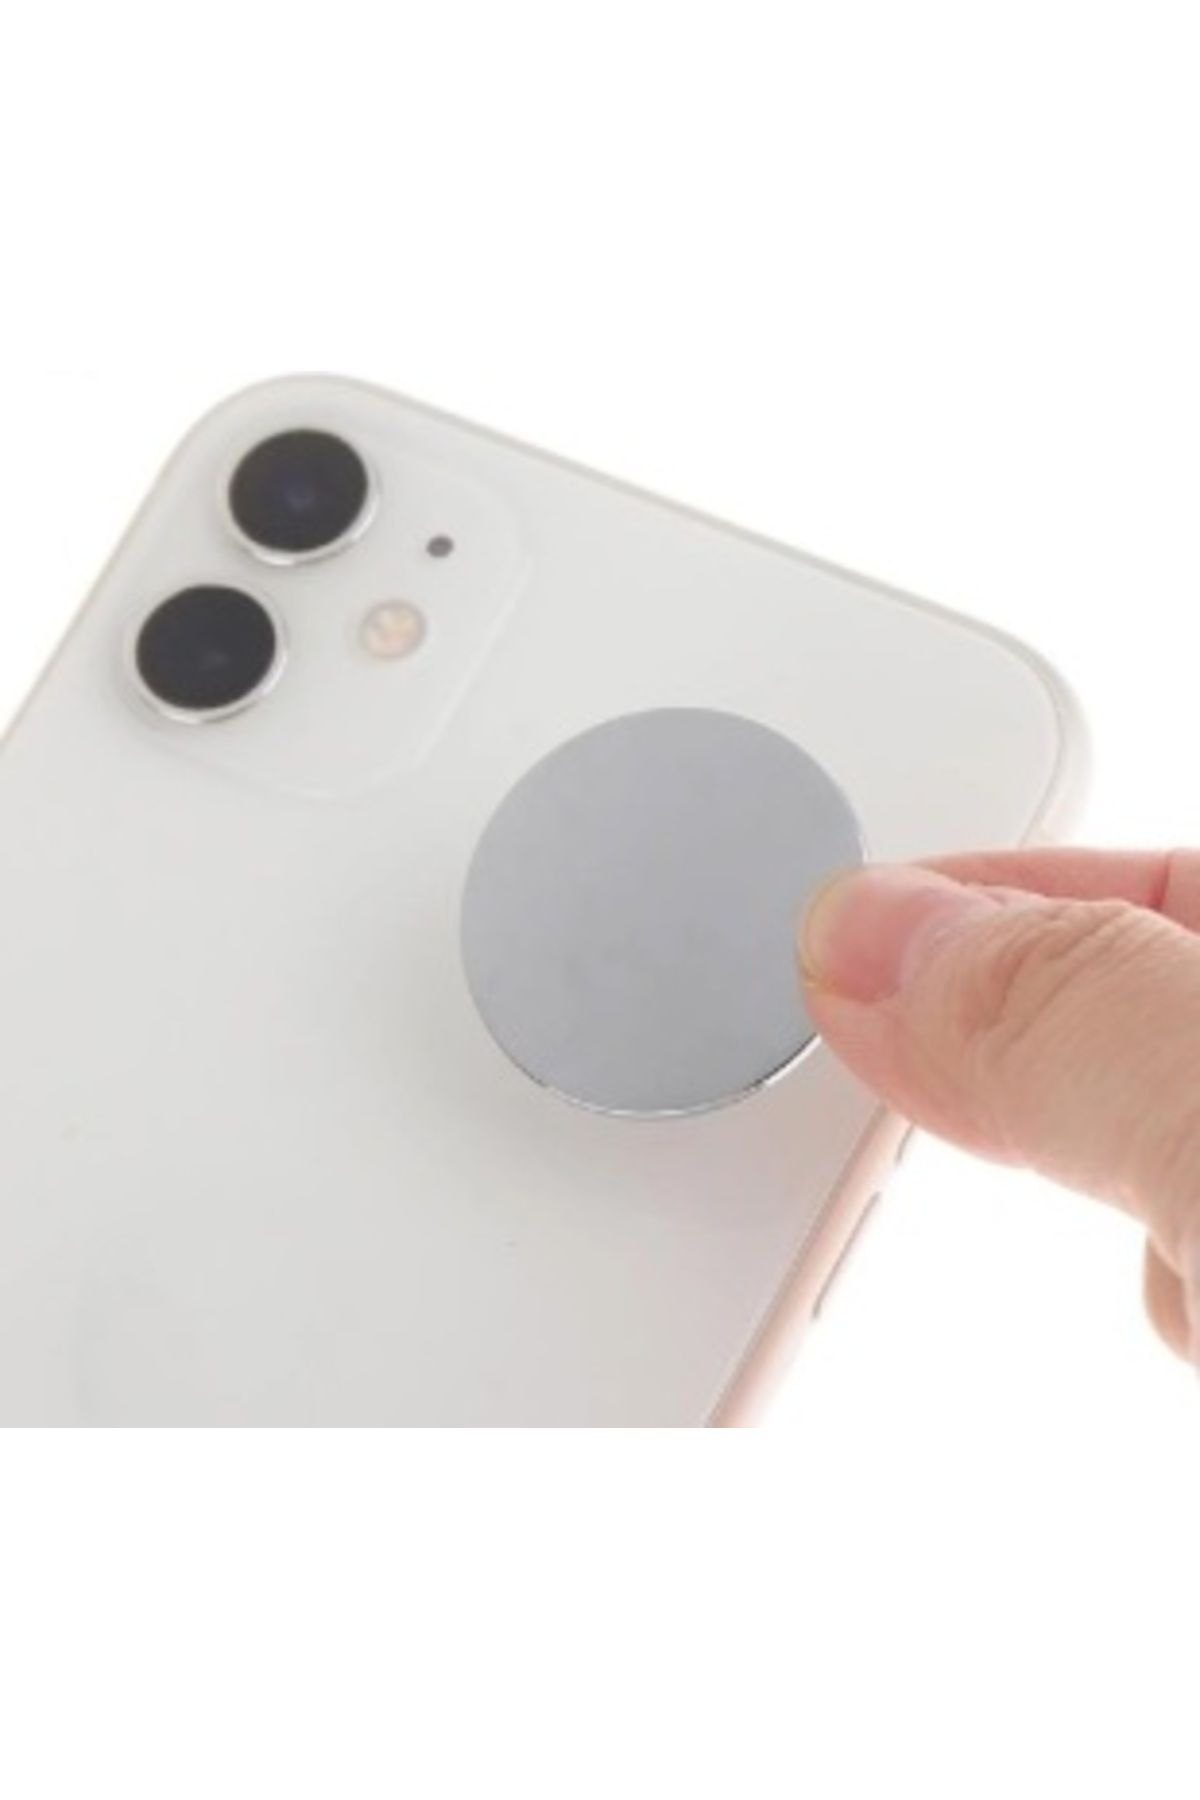 Spelt Cep Telefonu Tablet Eşya Düz Yüzey Yapışkanlı Mini Plastik Ayna Yakın Aynası Sticker 3,5 Cm